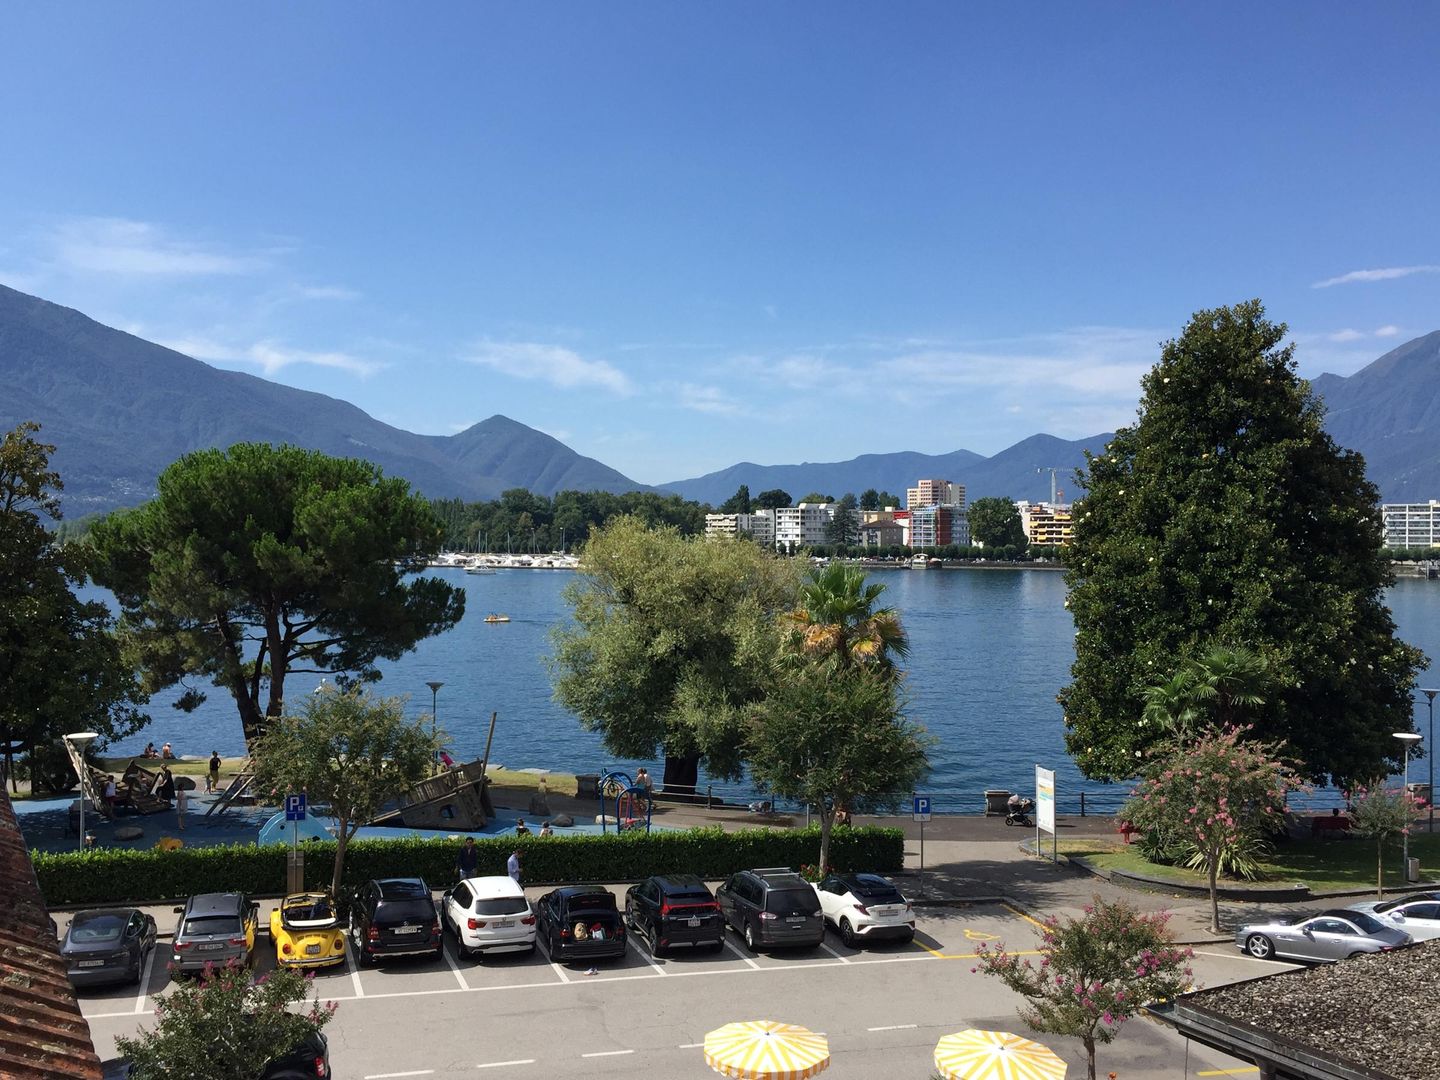 Ferienwohnung mit Blick auf den See und Seepromena  in der Schweiz